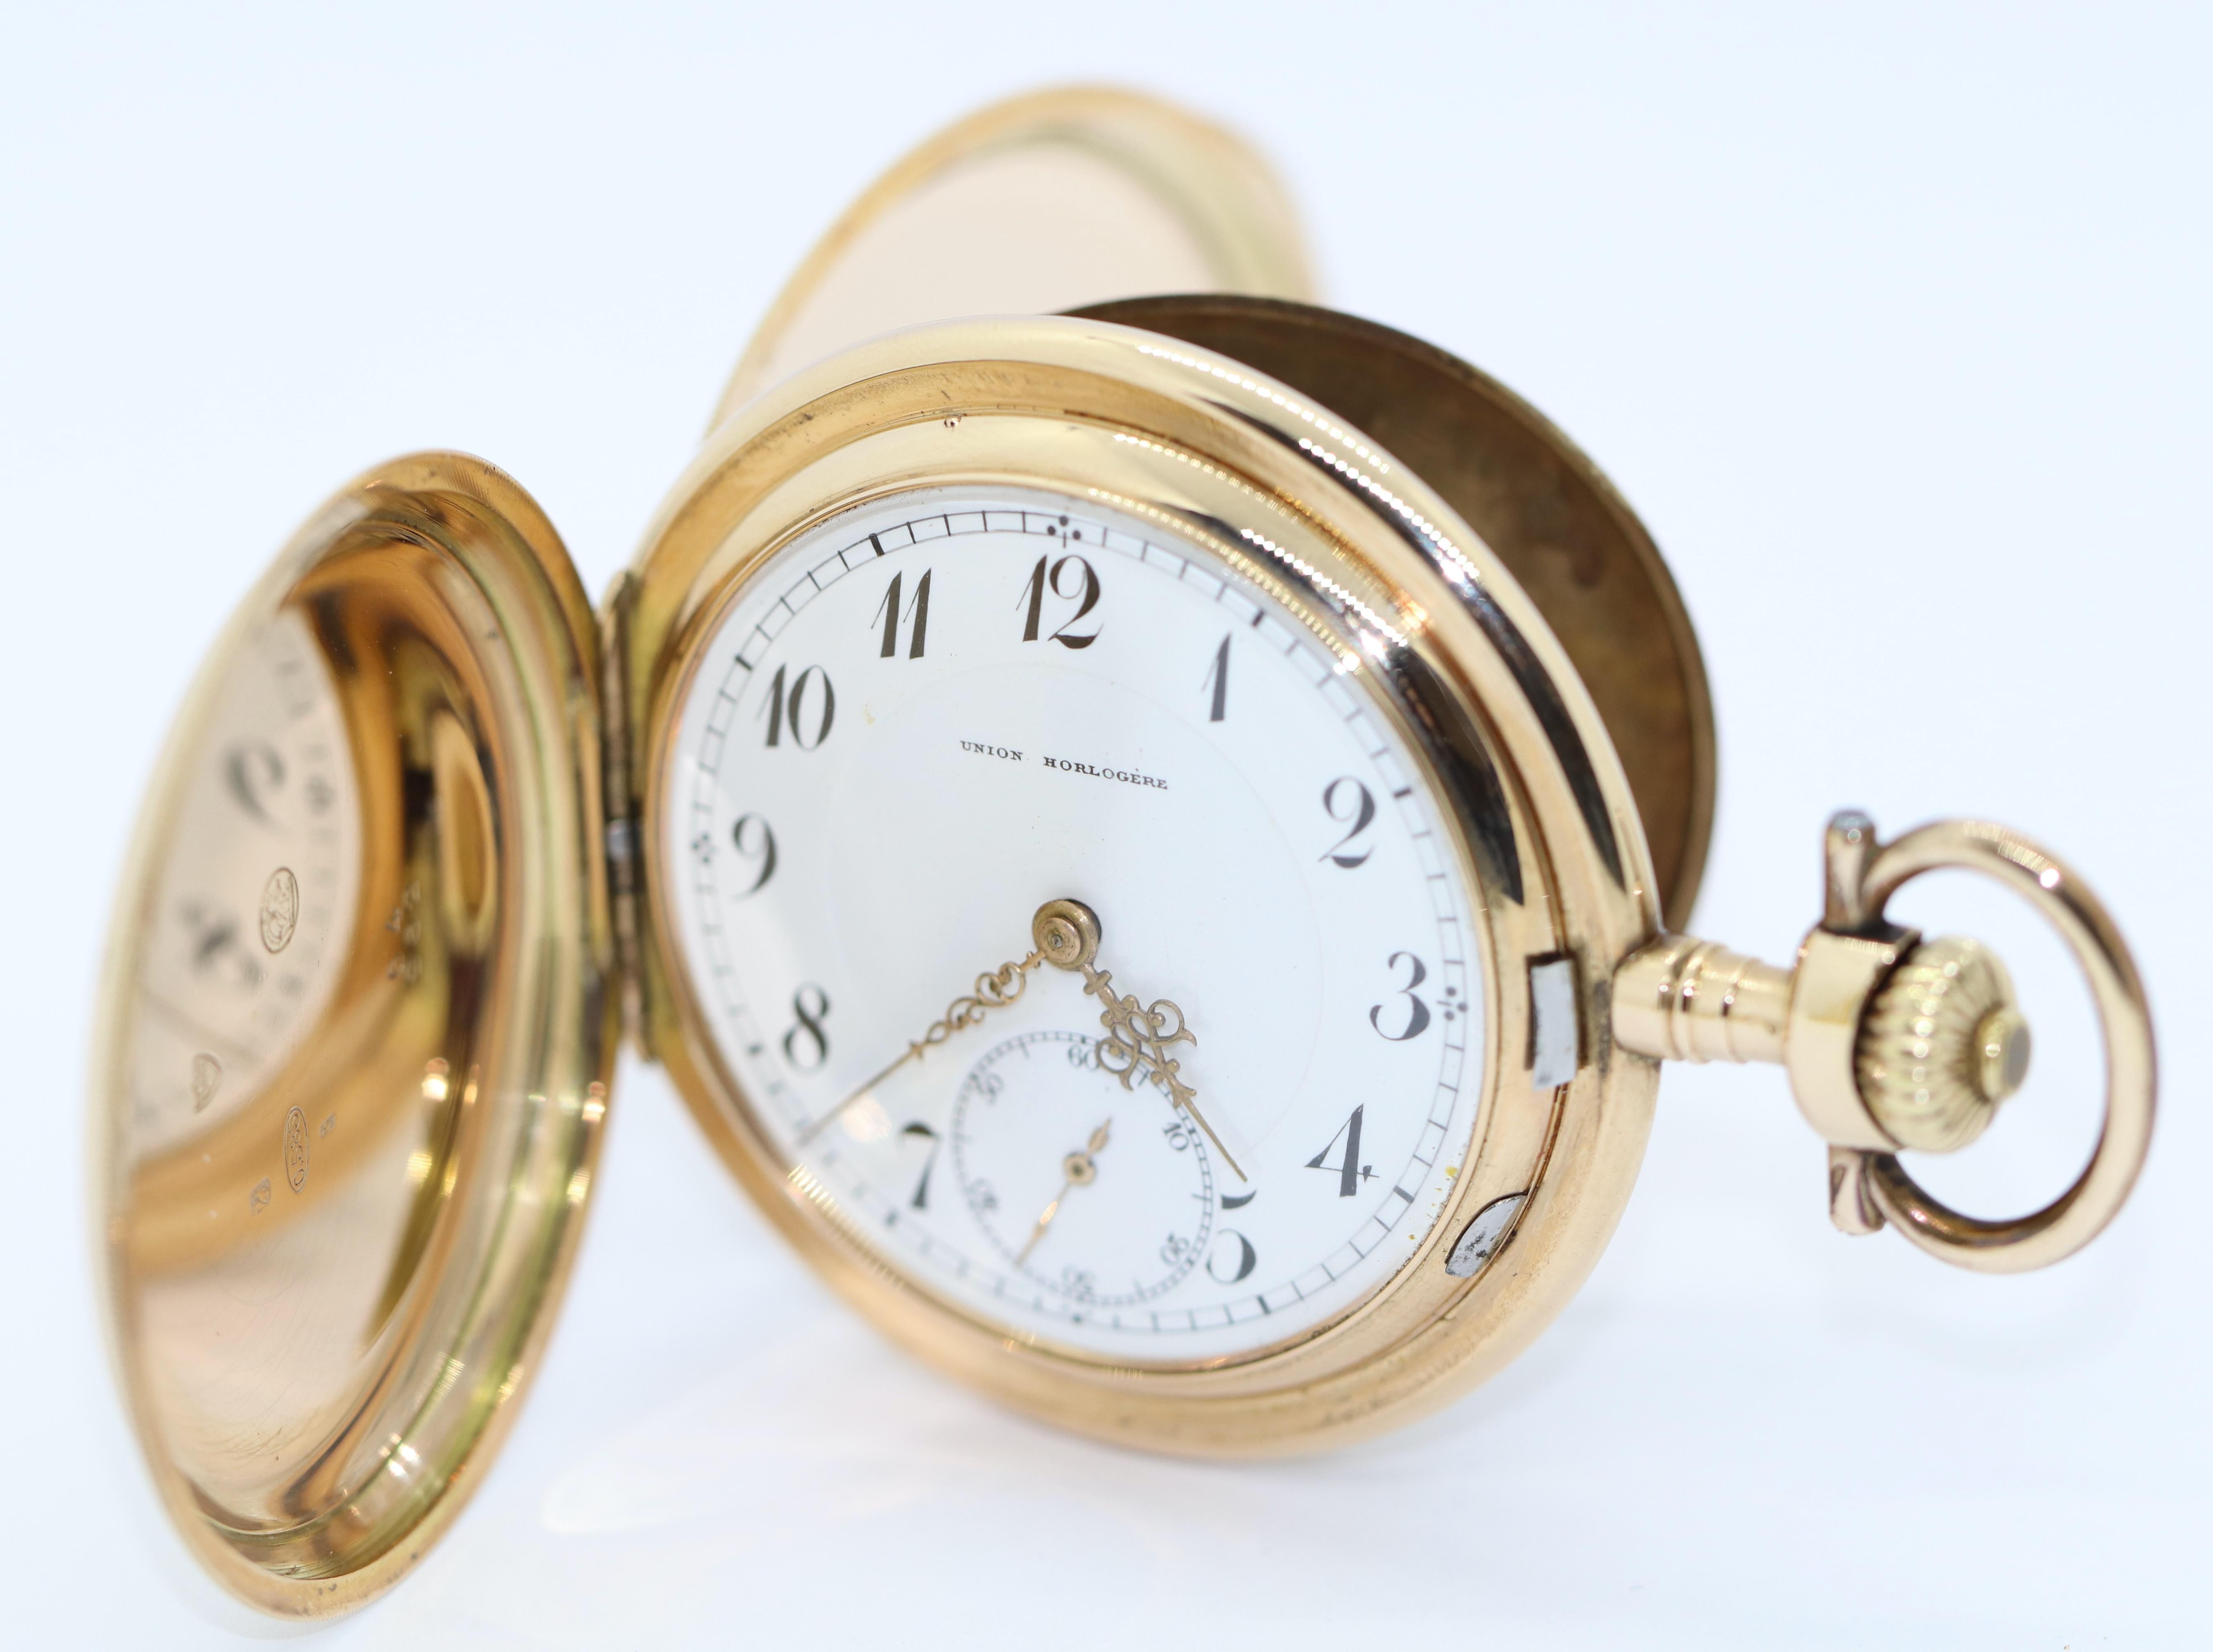 Union Horlogere 14 Karat Gold Taschenuhr.

Die Taschenuhr kann aufgezogen werden und funktioniert.

Mit Echtheitszertifikat.